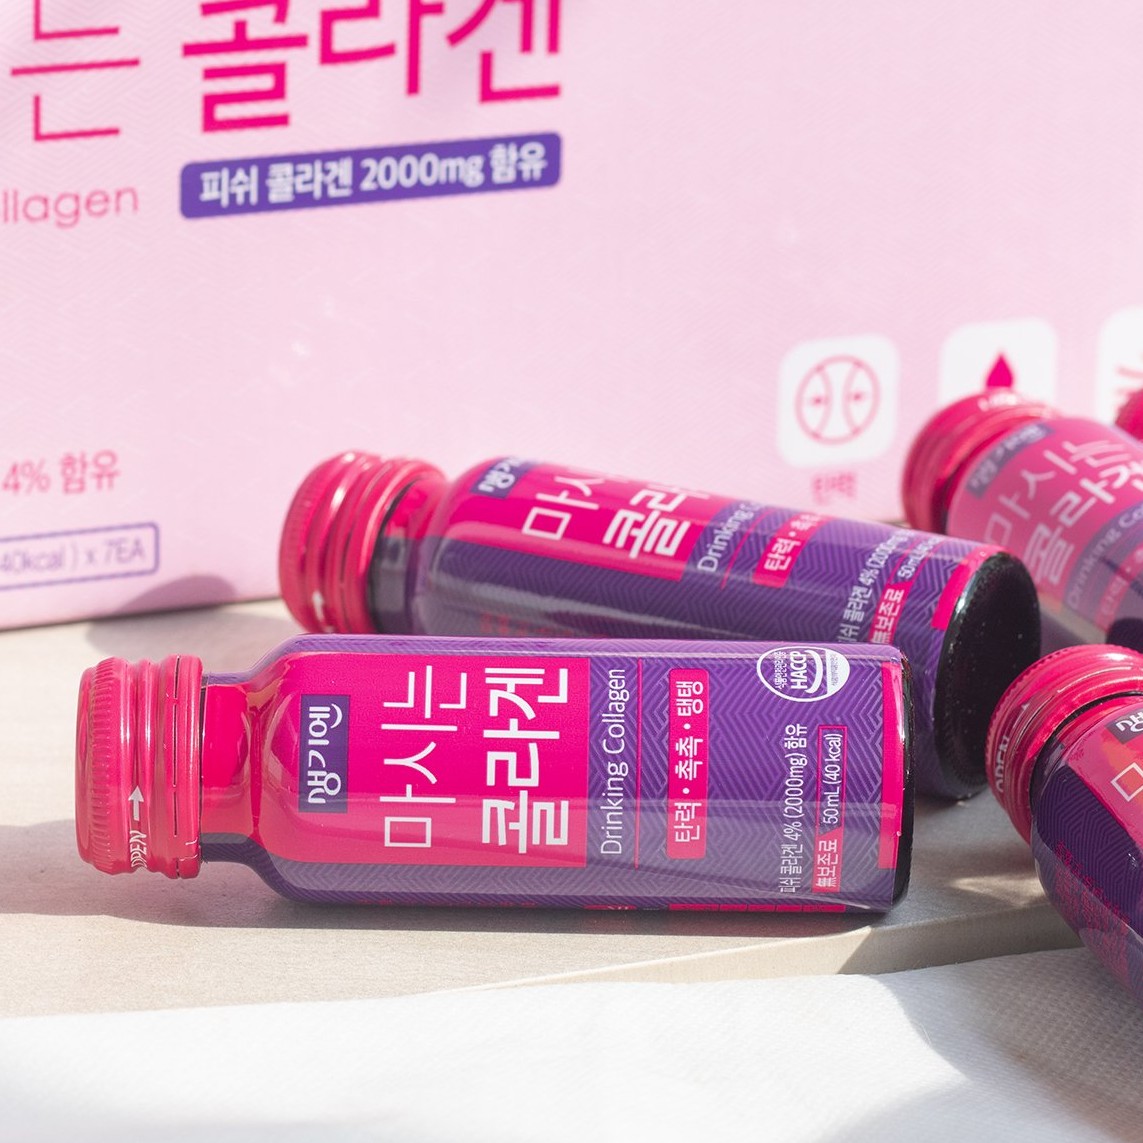 Review Top 5 Collagen Hàn Quốc dạng nước tốt nhất